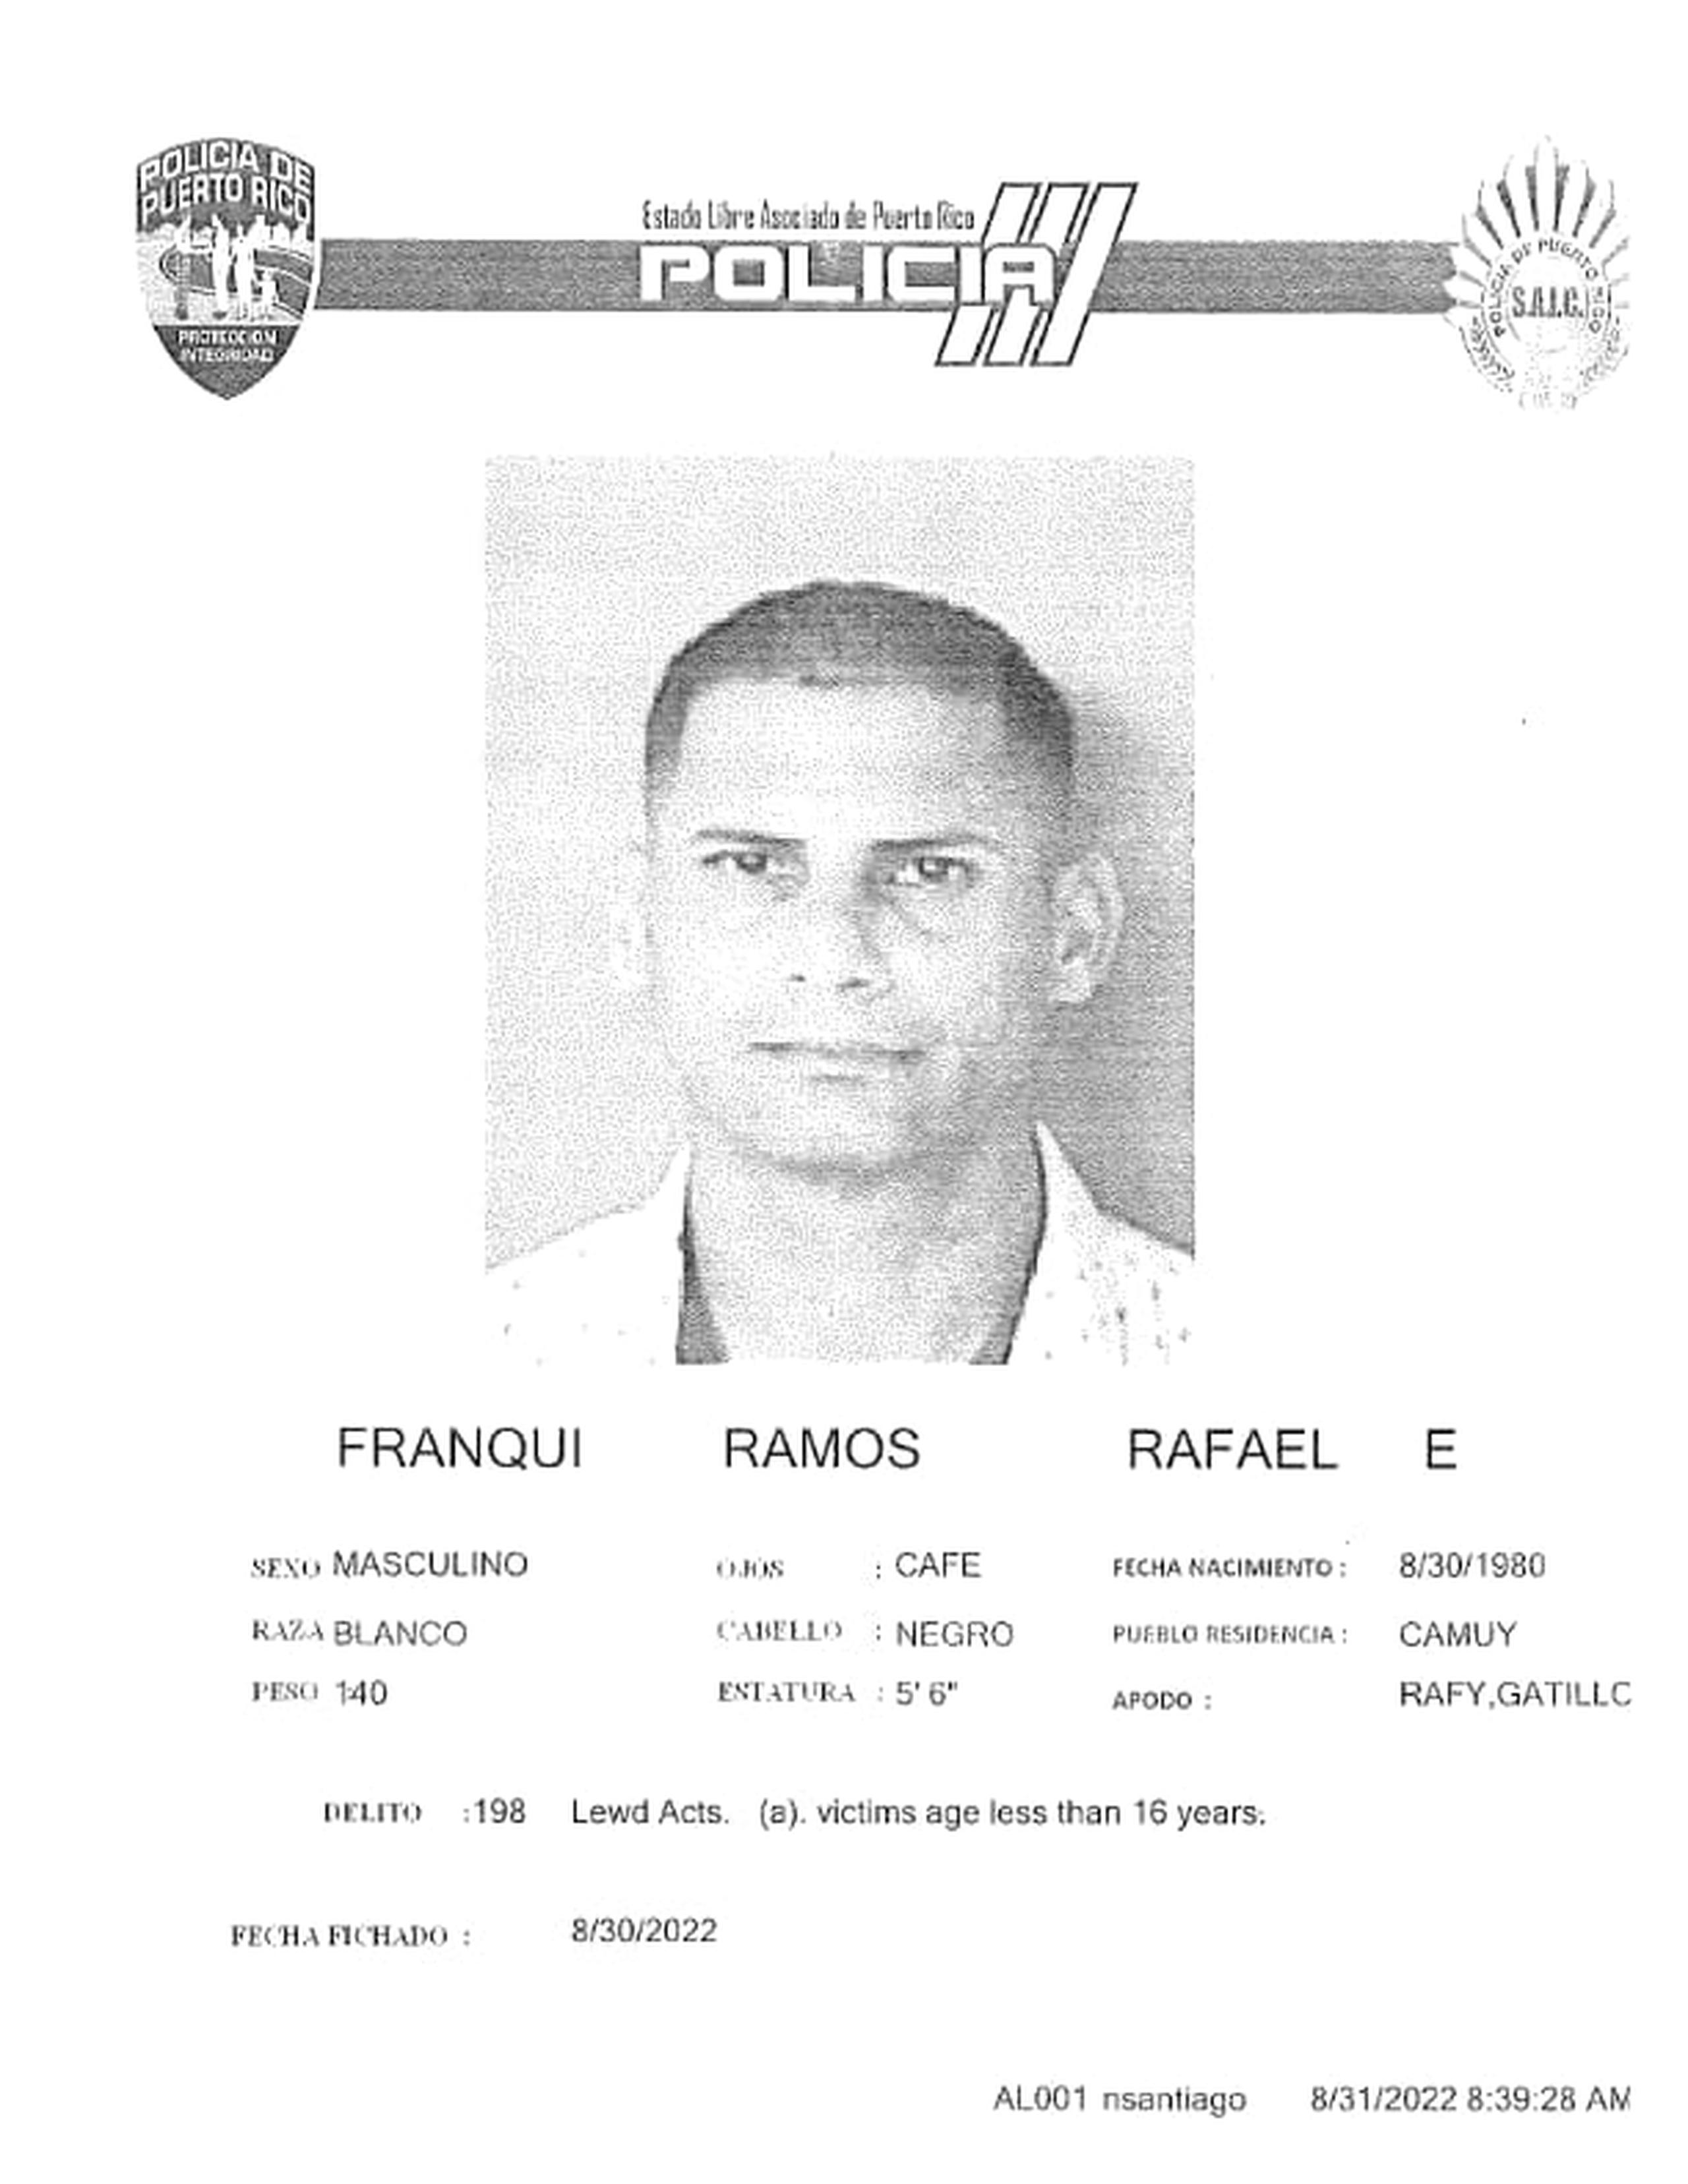 Rafael E. Franqui Ramos fue acusado por el delito de actos lascivos contra una menor.